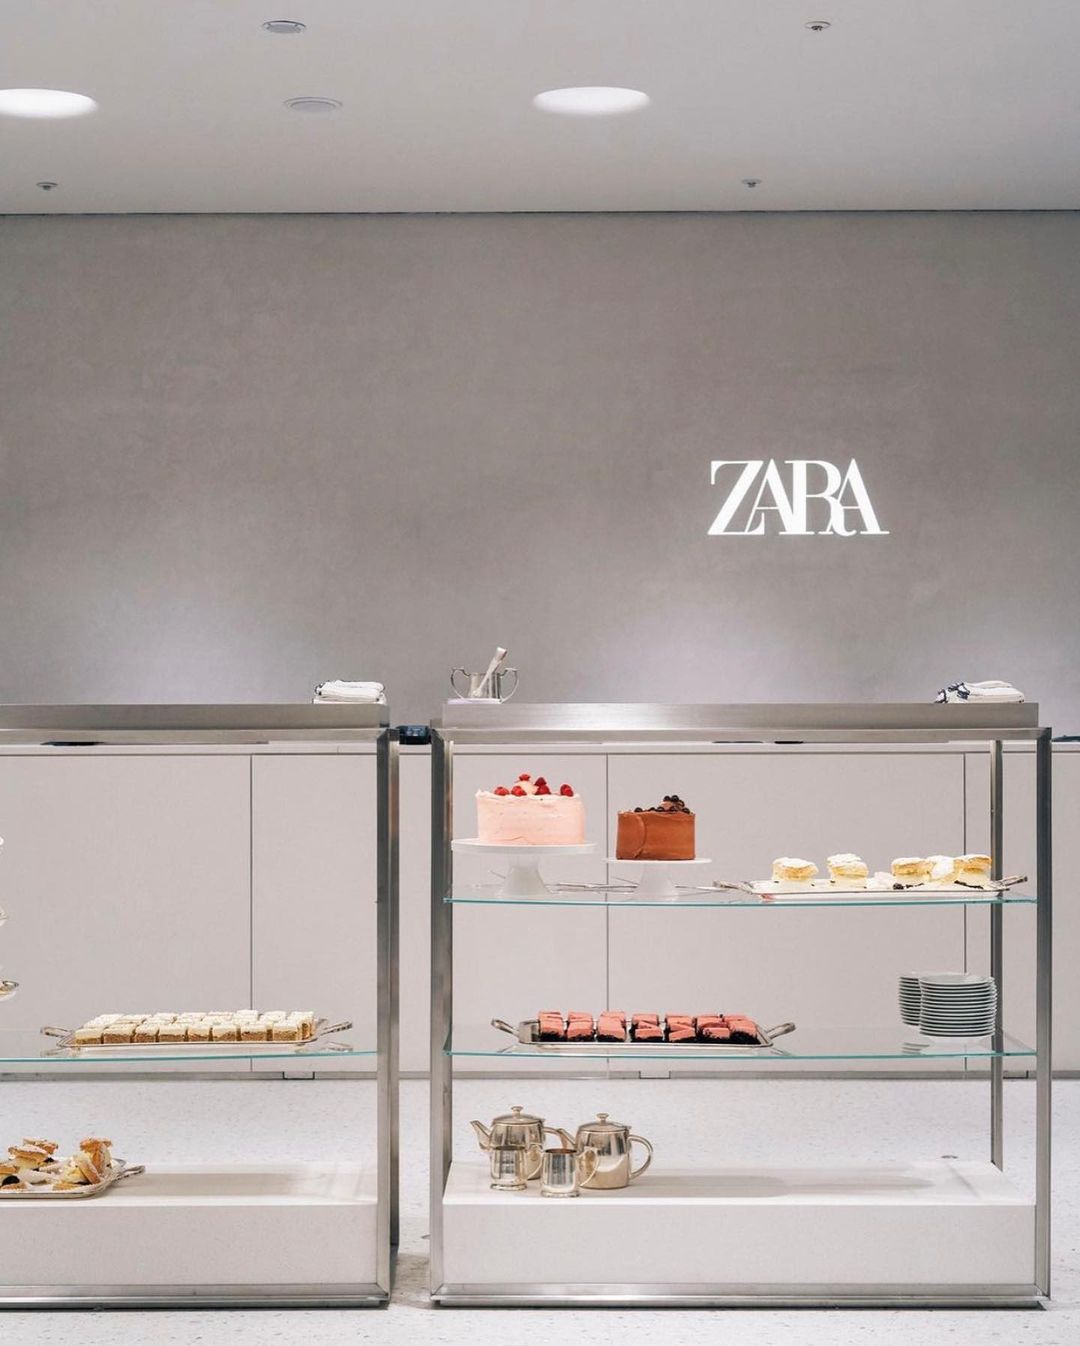 Zara otworzyła swoją pierwszą kawiarnie. Znajduje się w centrum handlowym